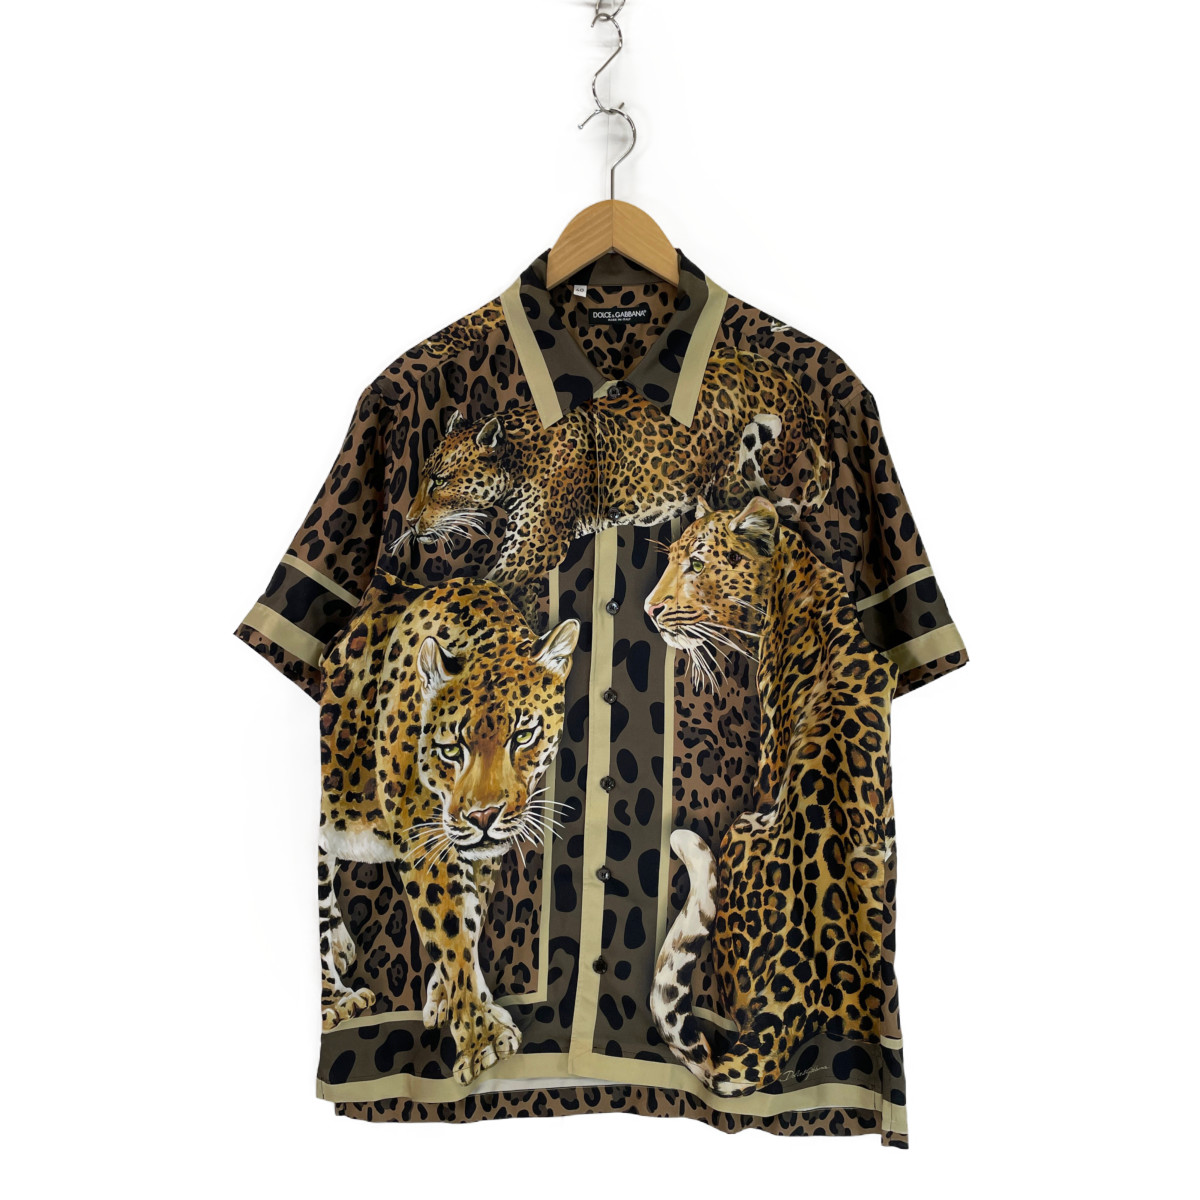 ドルチェ&ガッバーナのレオパード ヒョウ G5FX9T シルク 開襟 半袖シャツの買取実績です。